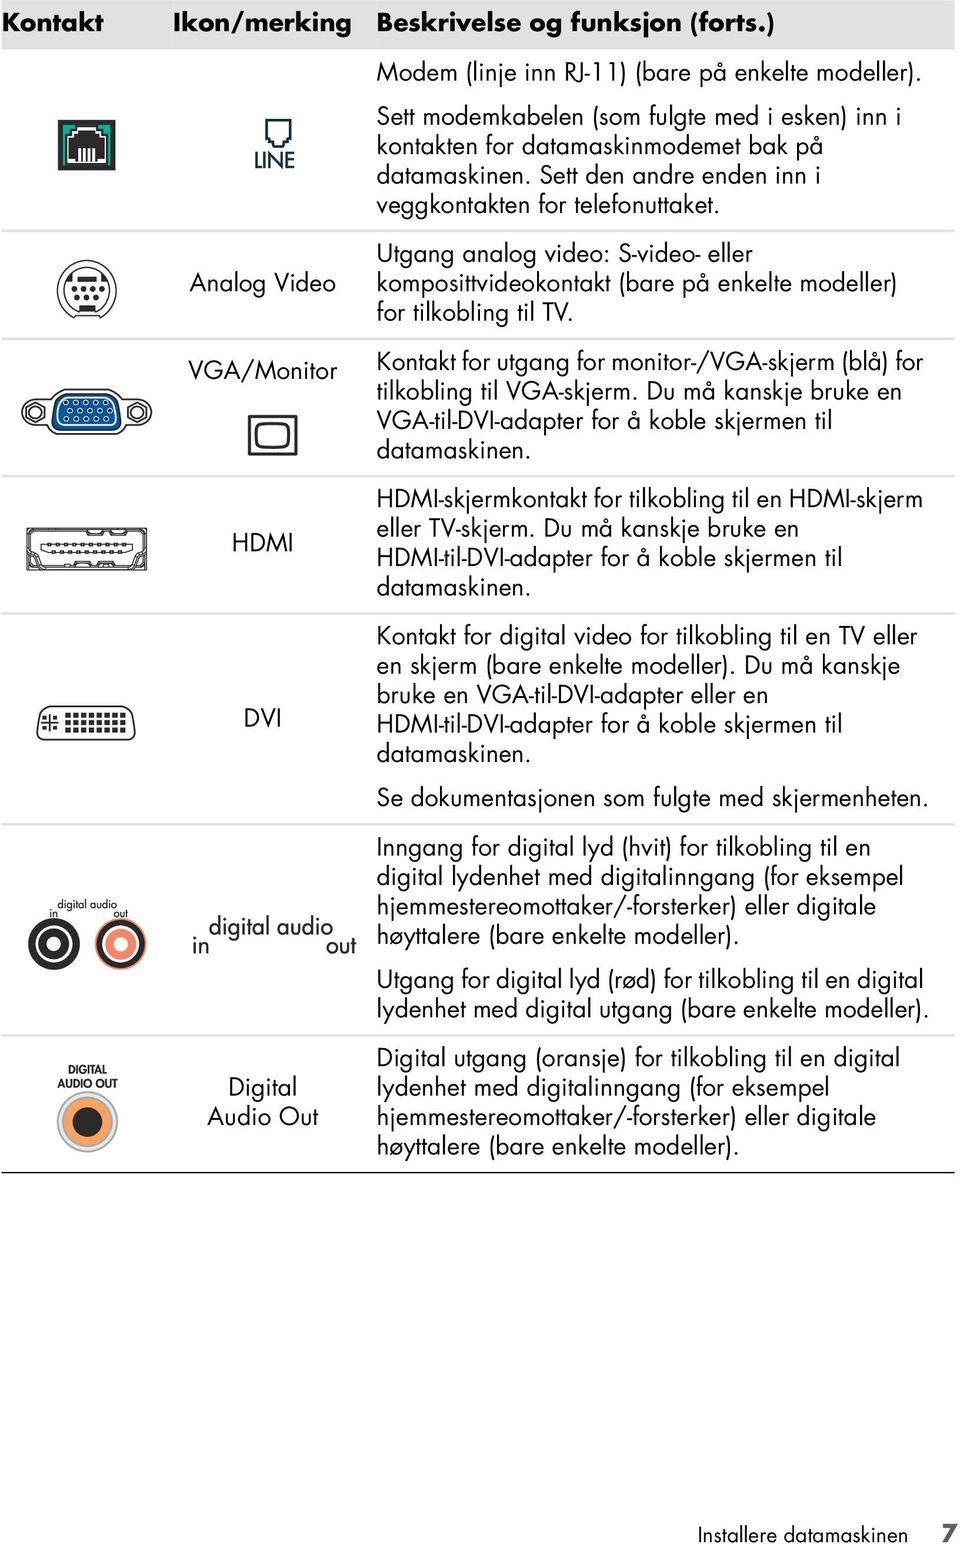 Analog Video VGA/Monitor HDMI DVI Utgang analog video: S-video- eller komposittvideokontakt (bare på enkelte modeller) for tilkobling til TV.